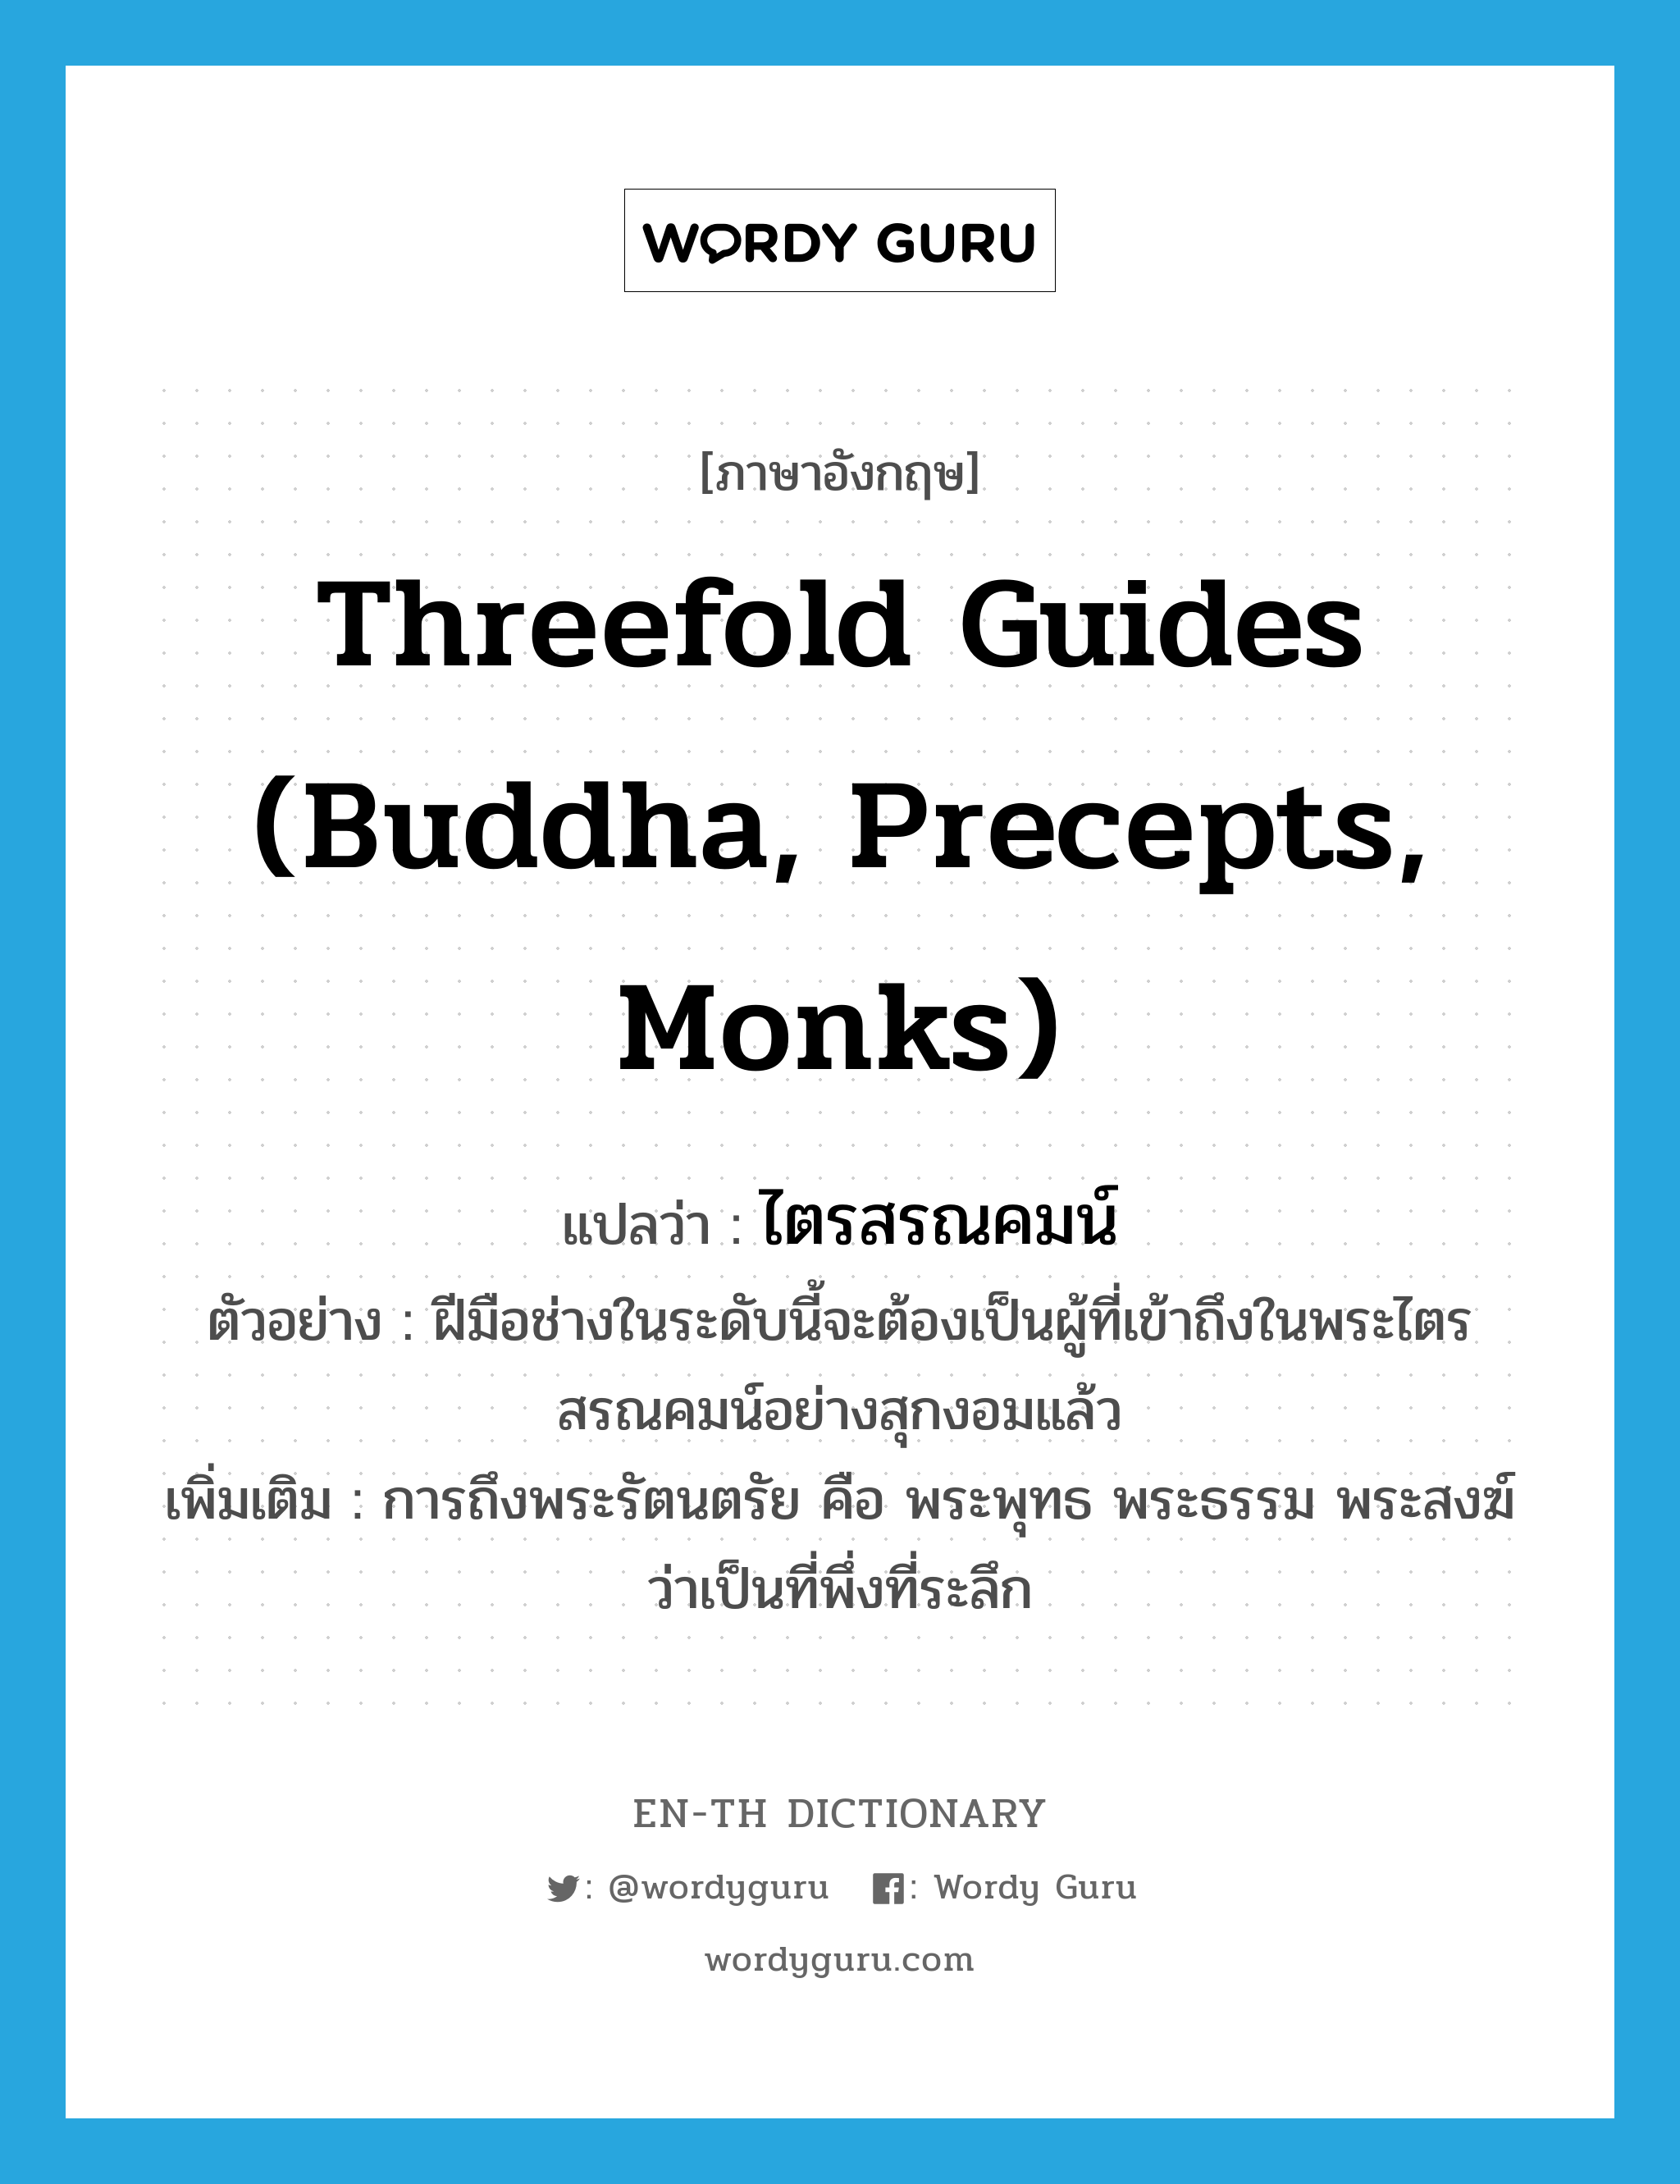 Threefold Guides (Buddha, Precepts, Monks) แปลว่า?, คำศัพท์ภาษาอังกฤษ Threefold Guides (Buddha, Precepts, Monks) แปลว่า ไตรสรณคมน์ ประเภท N ตัวอย่าง ฝีมือช่างในระดับนี้จะต้องเป็นผู้ที่เข้าถึงในพระไตรสรณคมน์อย่างสุกงอมแล้ว เพิ่มเติม การถึงพระรัตนตรัย คือ พระพุทธ พระธรรม พระสงฆ์ ว่าเป็นที่พึ่งที่ระลึก หมวด N